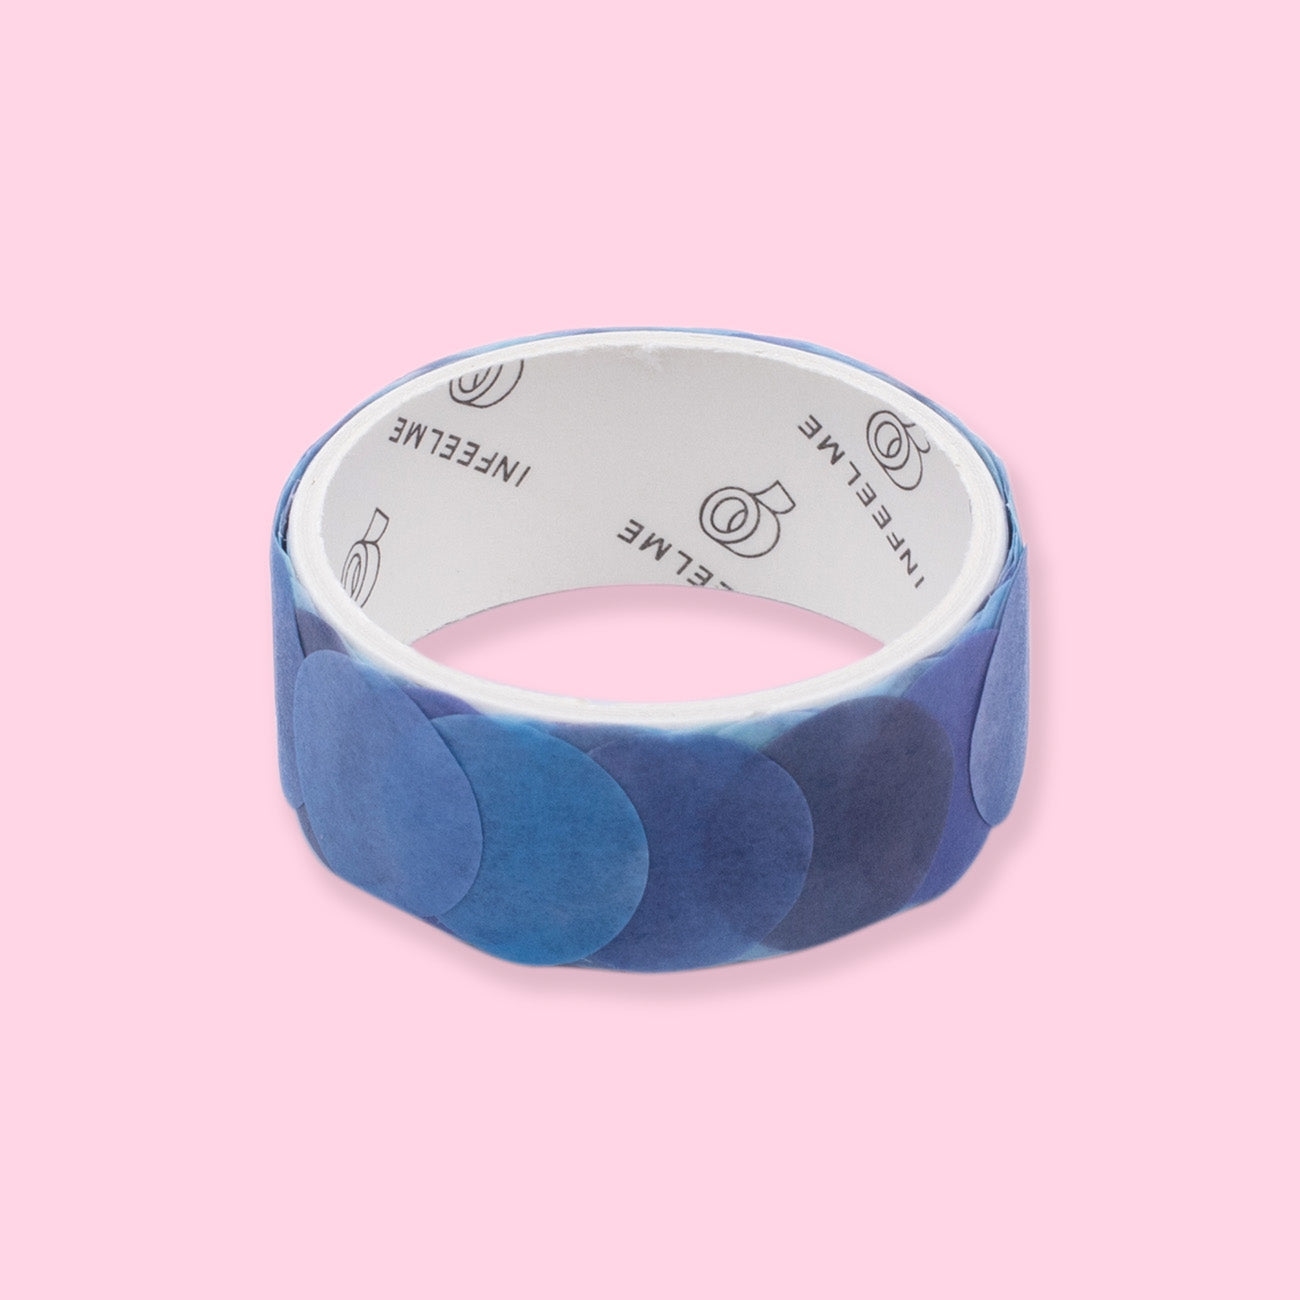 Polka Dot Washi Sticker - Blue